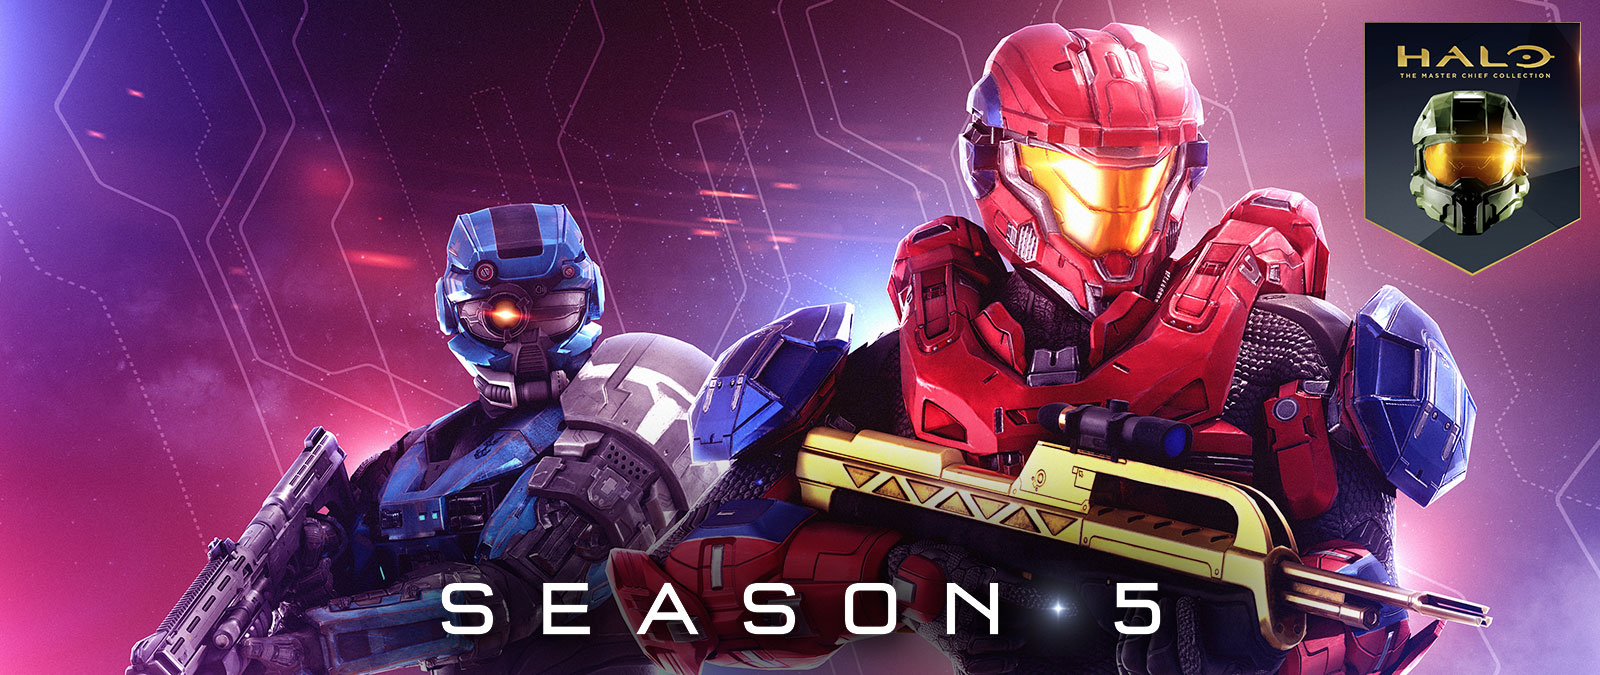 Halo: The Master Chief Collection, Saison 5, un Spartan rouge tenant un fusil de combat pendant qu’un Spartan bleu porte un casque spécial avec un œil